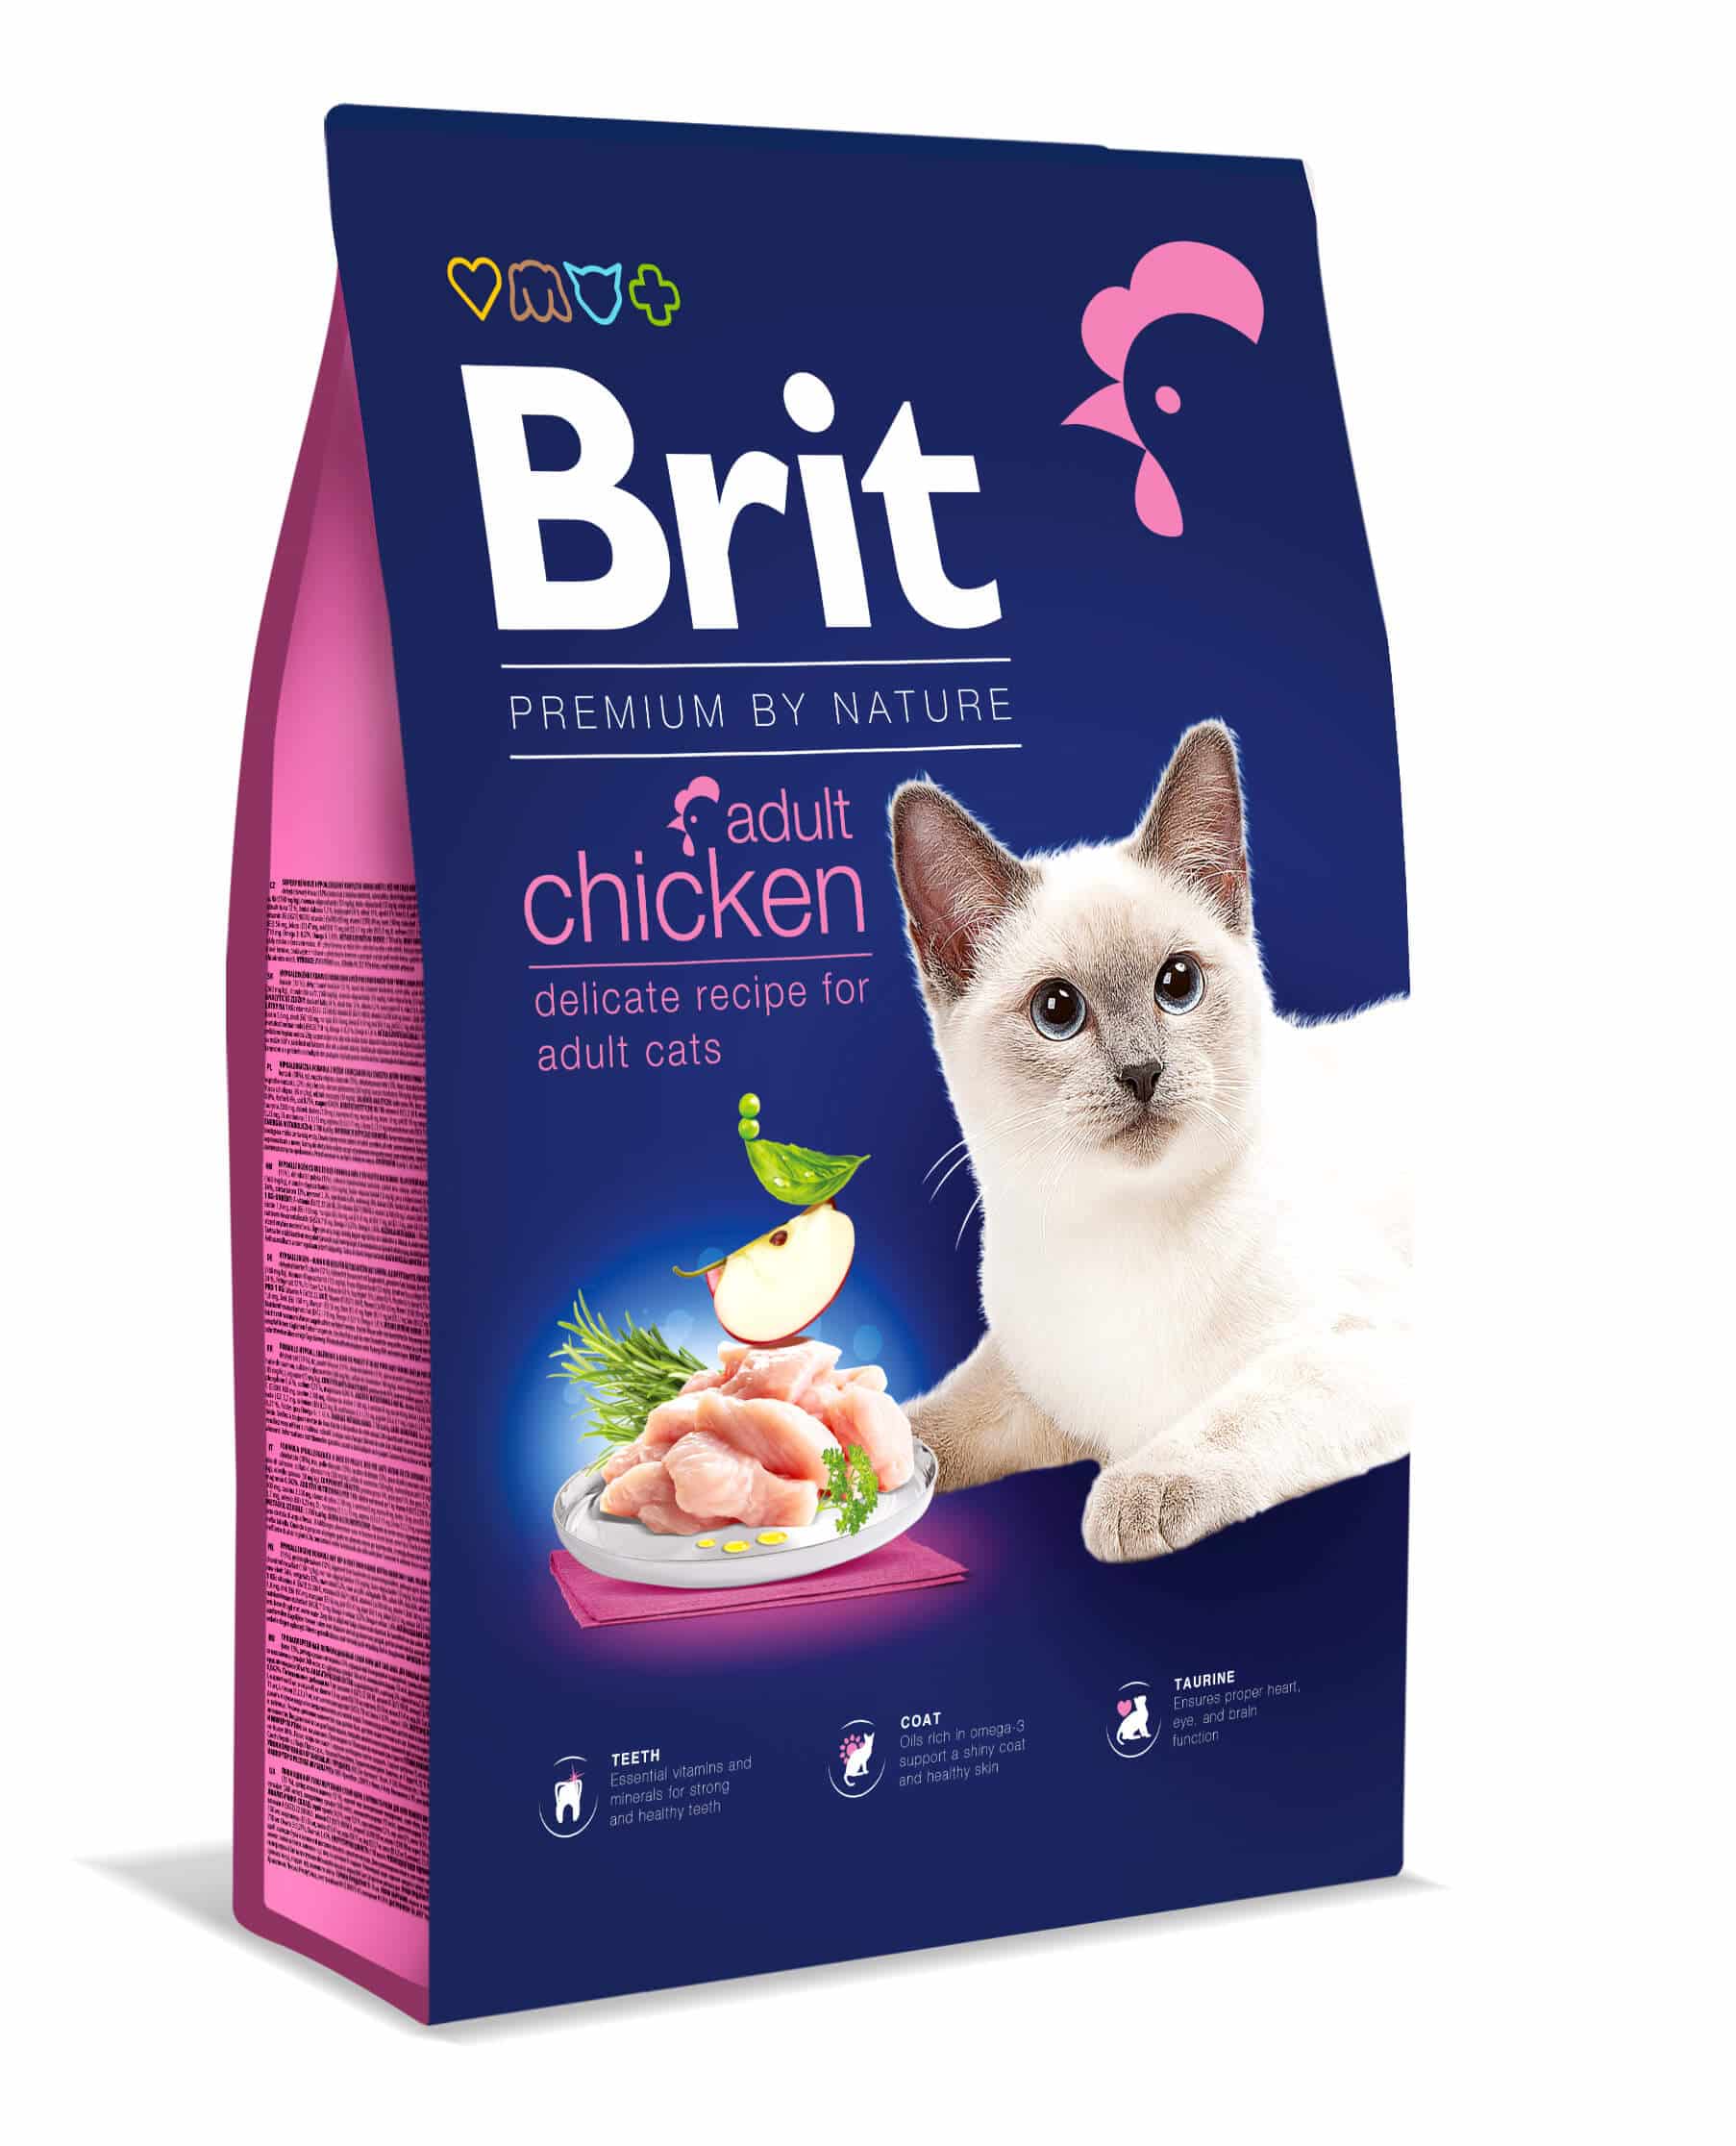 Brit Premium by Nature Kat - Adult Kip kopen? Veilig en bestellen!